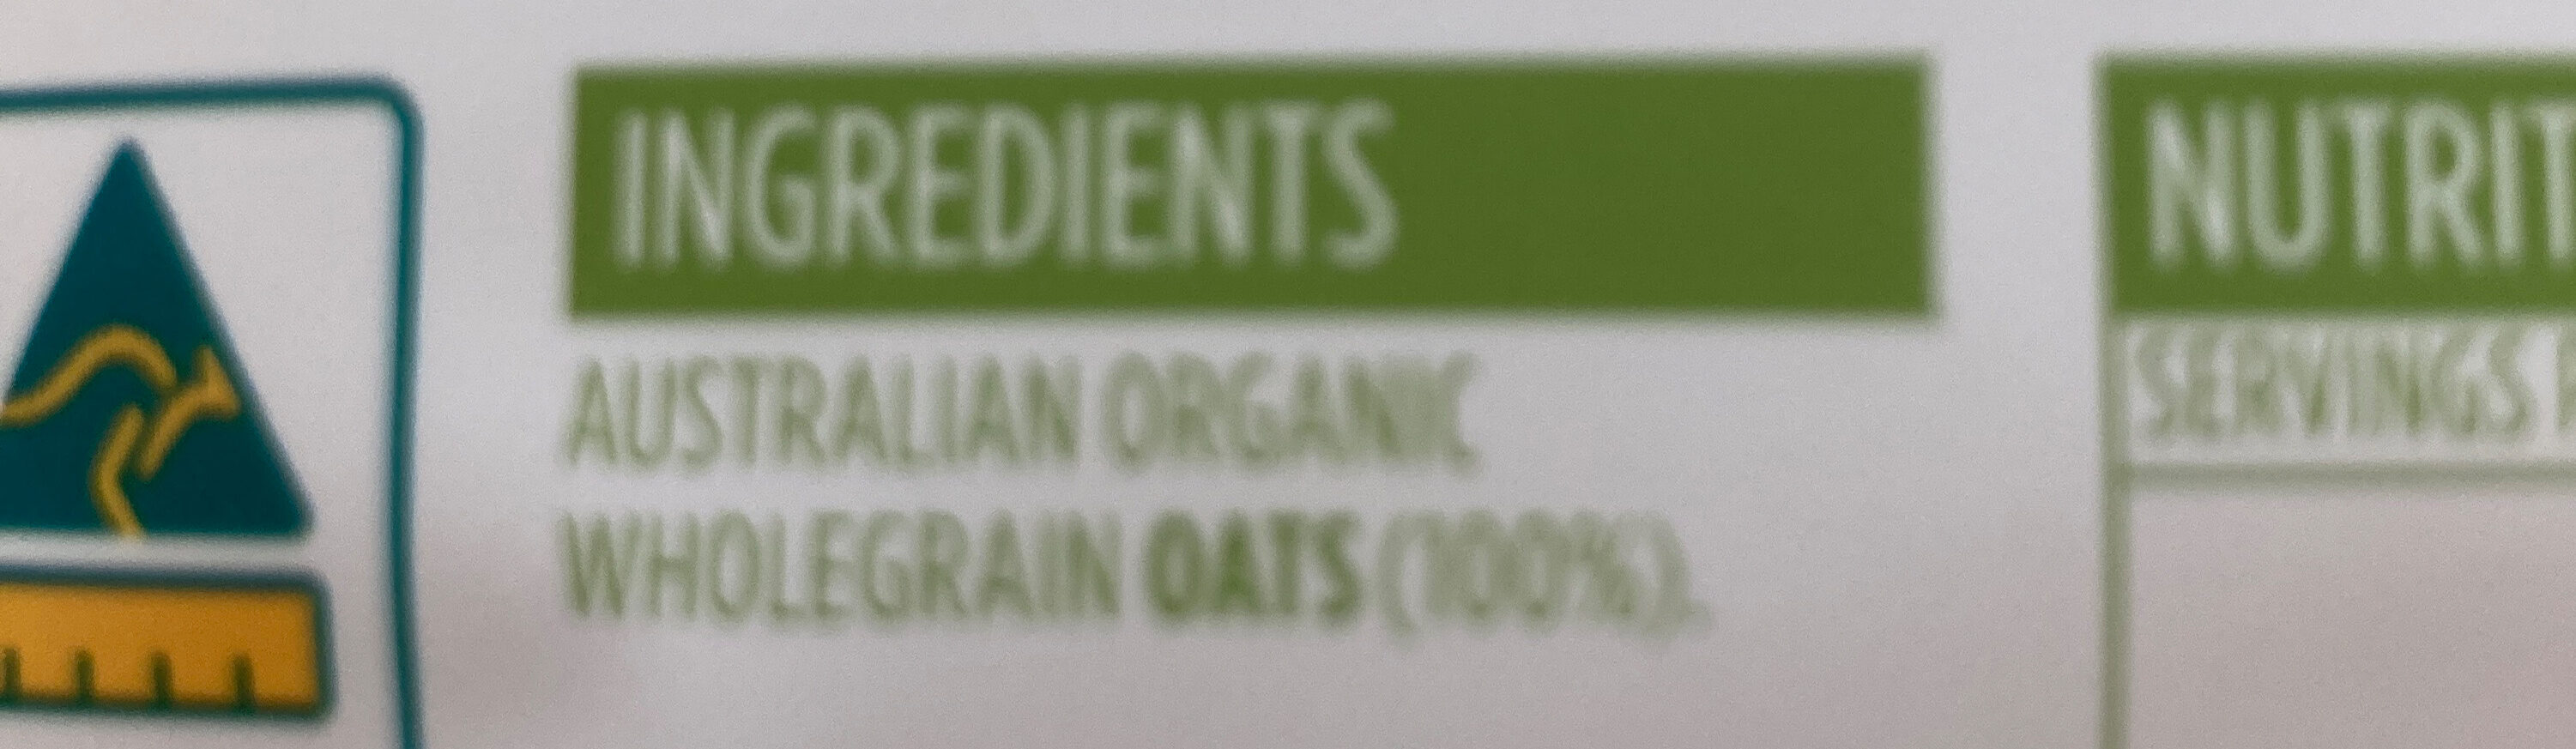 Steel cut oats - Ingredients